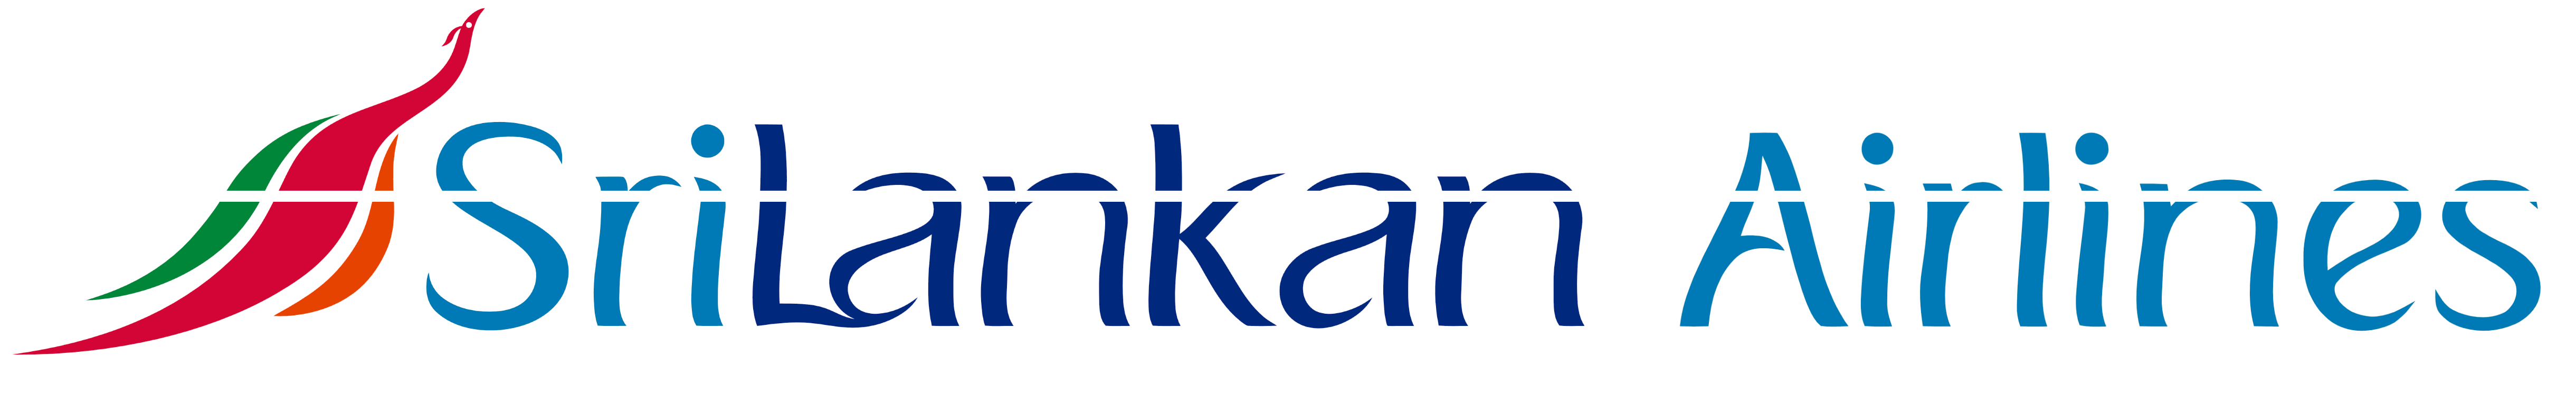 SriLankan Airlines logo, logotype